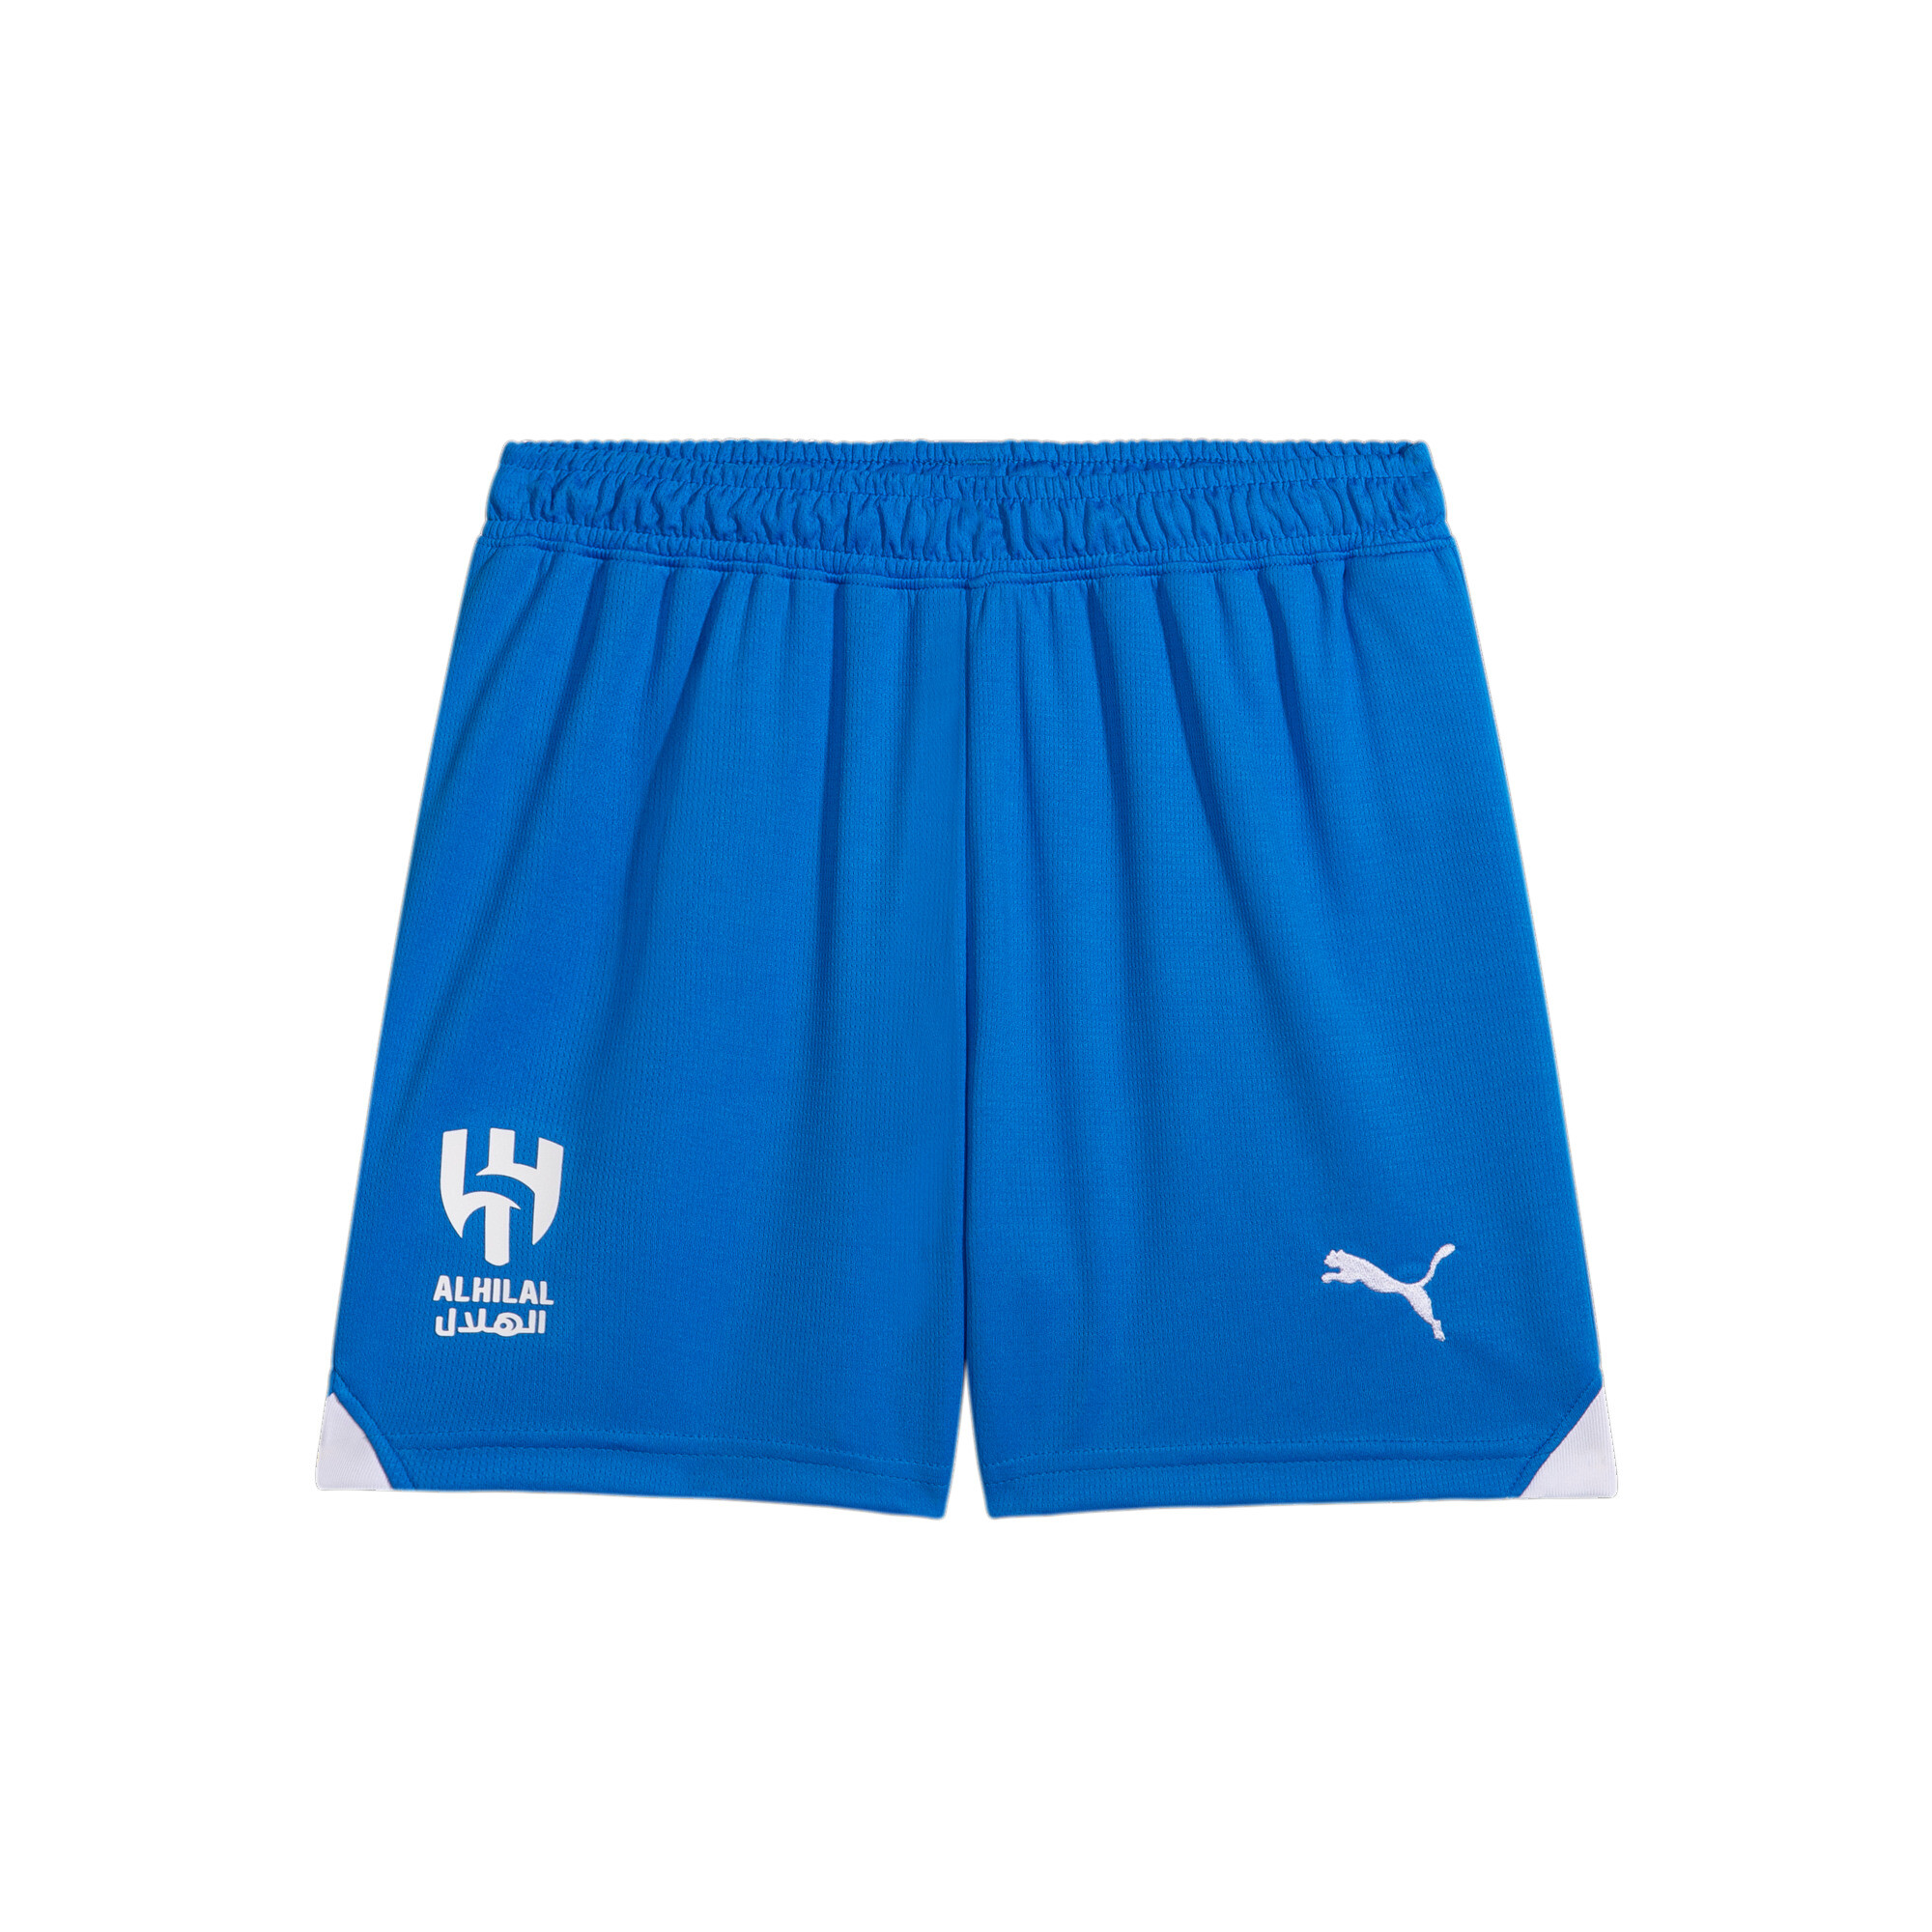 PUMA Al Hilal 23/24 Replica Shorts In Blue, Size 1-2 Youth